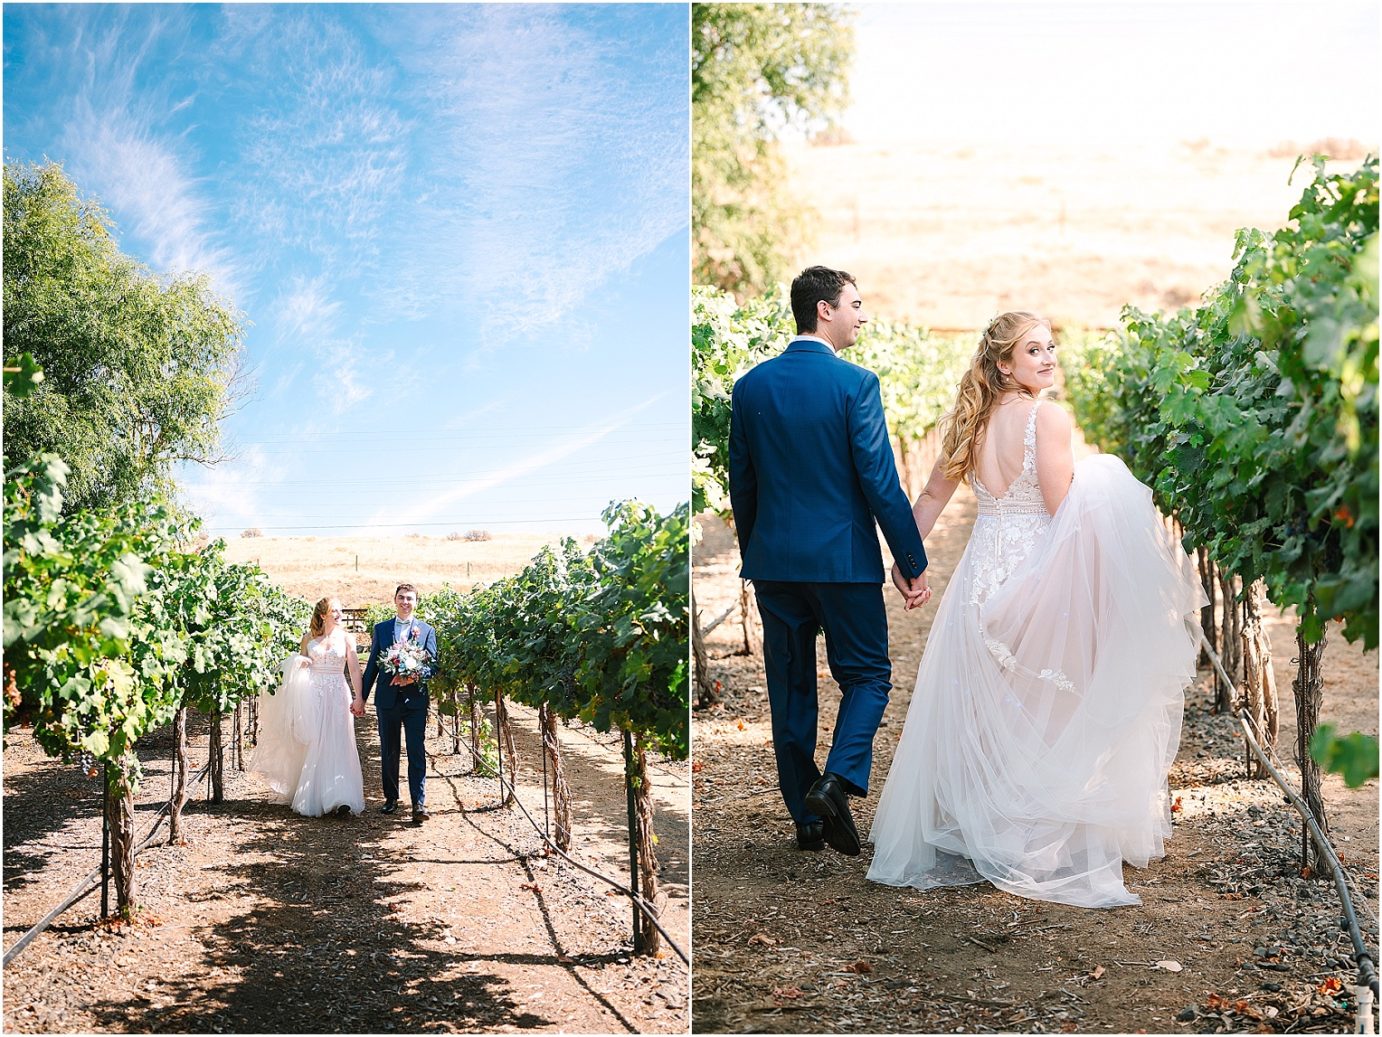 Wedding at Sugar Pine Barn - bride and groom in vineyard